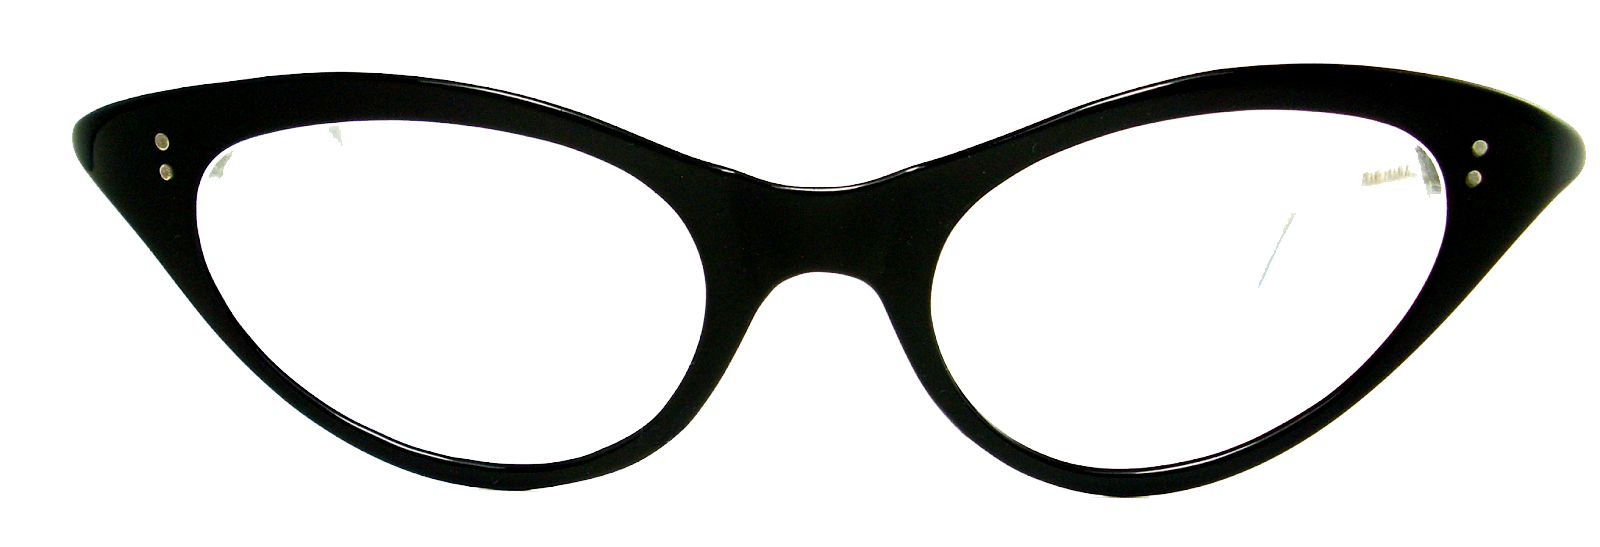 Glasses clipart eye.  s cat lens